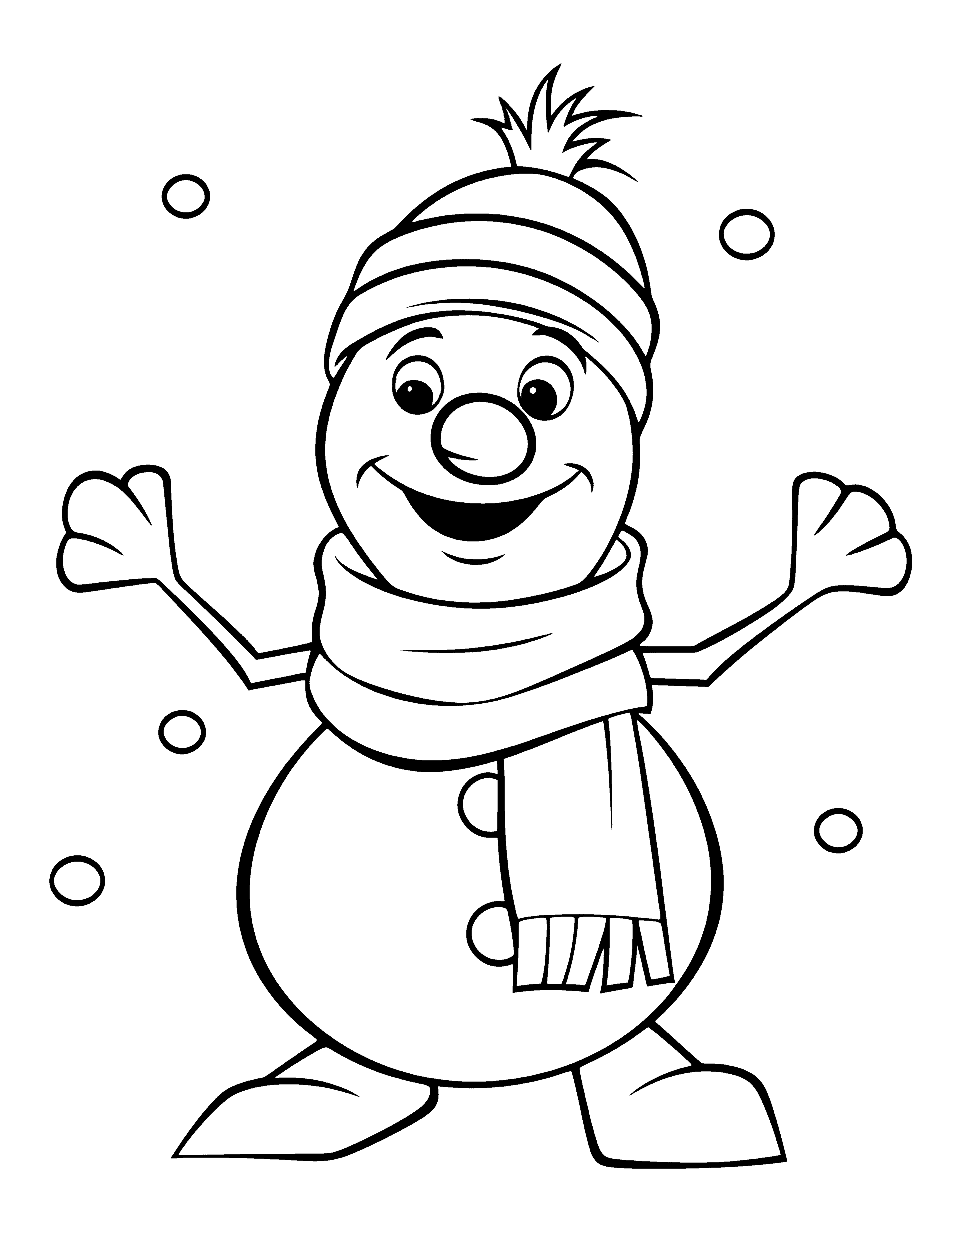 Frozen's Friendly Snowman Olaf Winter Coloring Page - The friendly snowman, Olaf, spreading joy in the winter season.